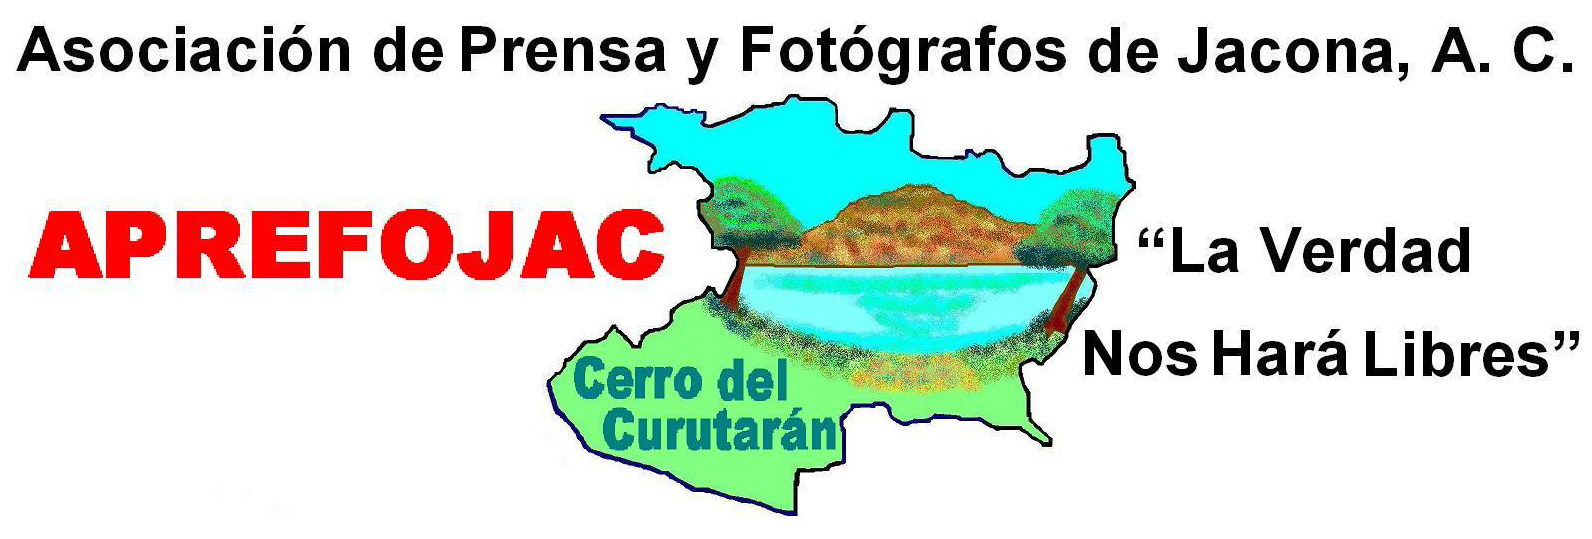 Asociacion de Periodistas y Fotografos de Jacona AC APREFOJAC